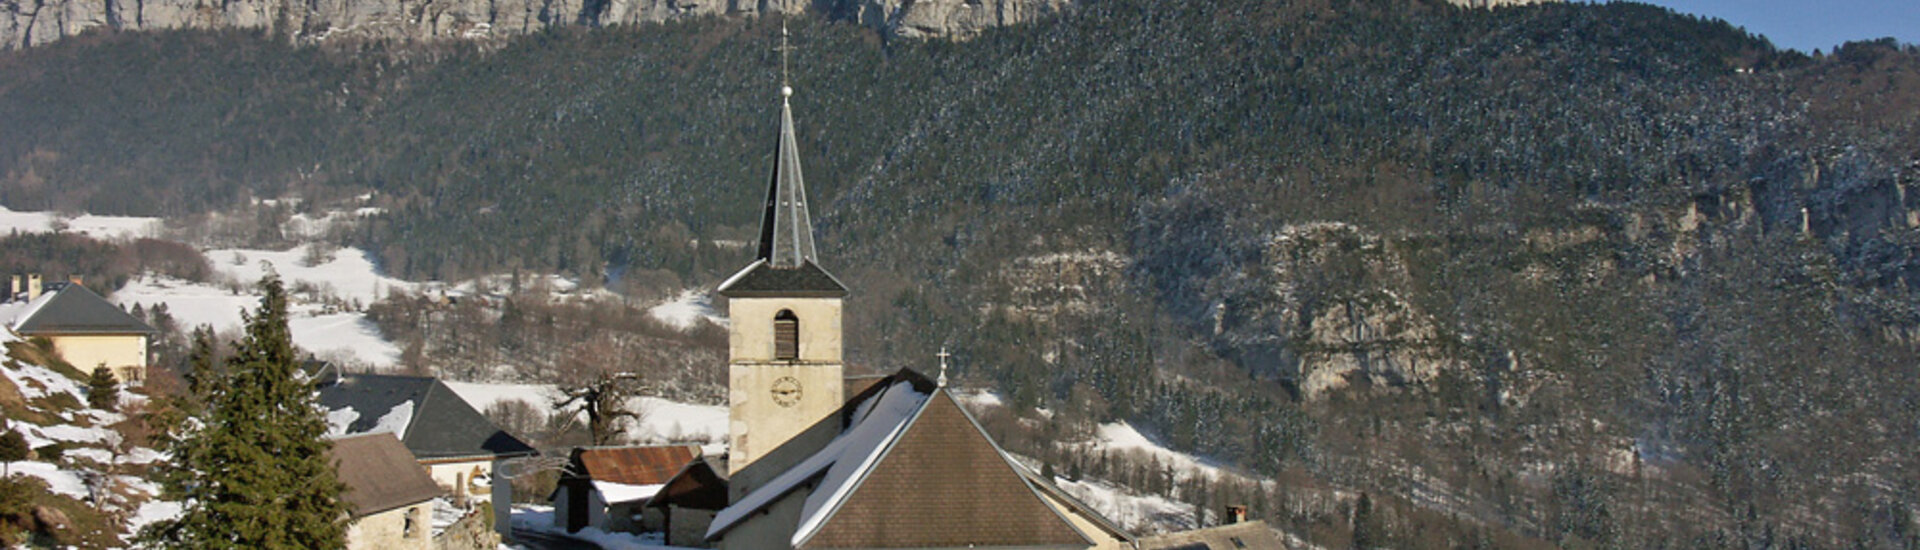 Commune de Corbel - Chartreuse - Savoie